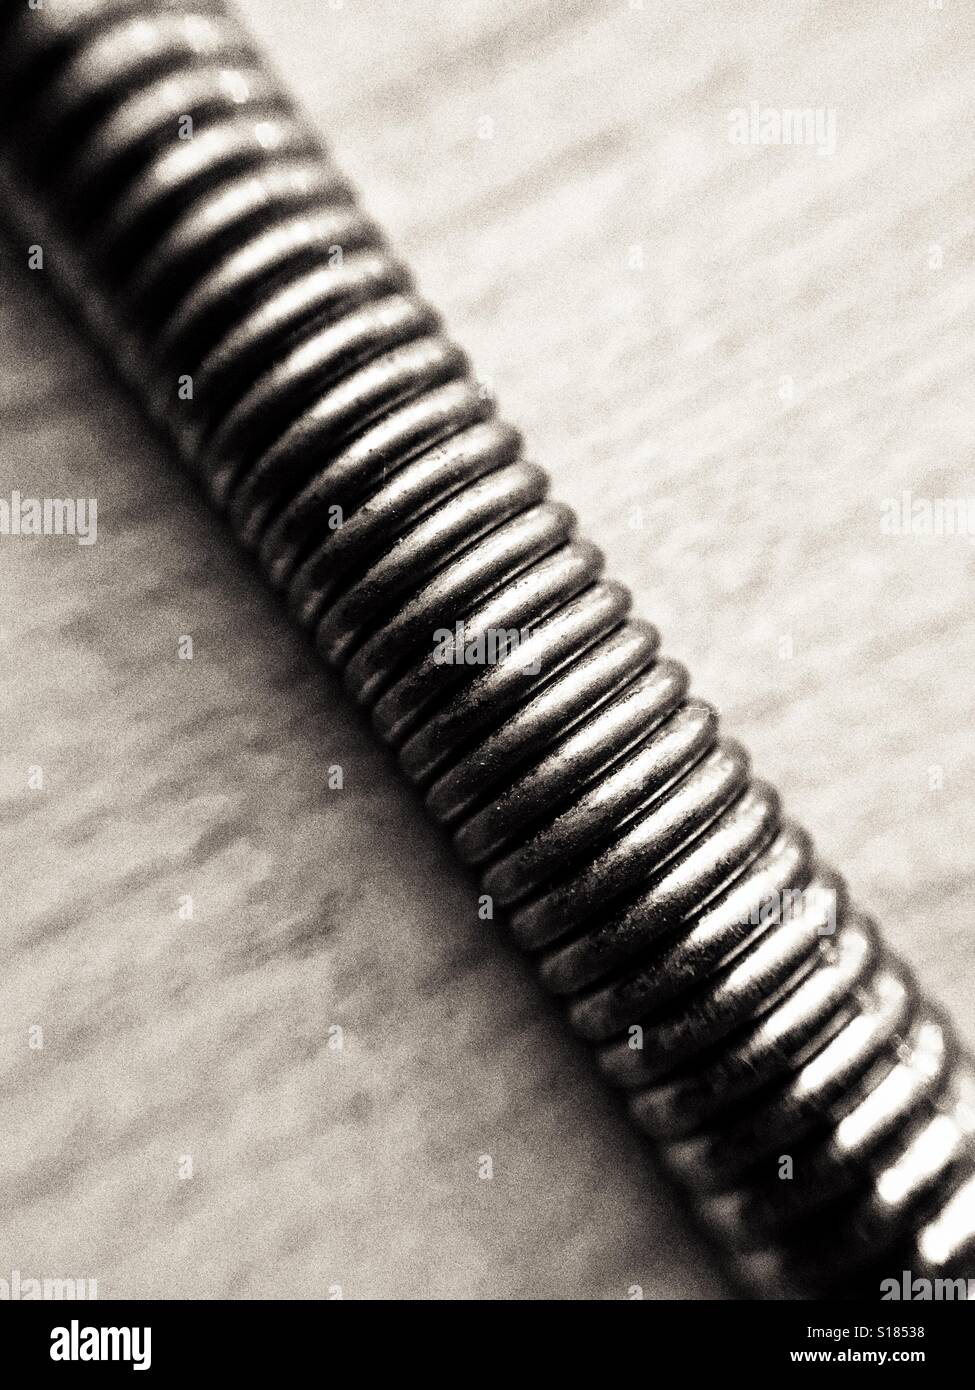 Coils of a tremolo bridge spring from a guitar Stock Photo